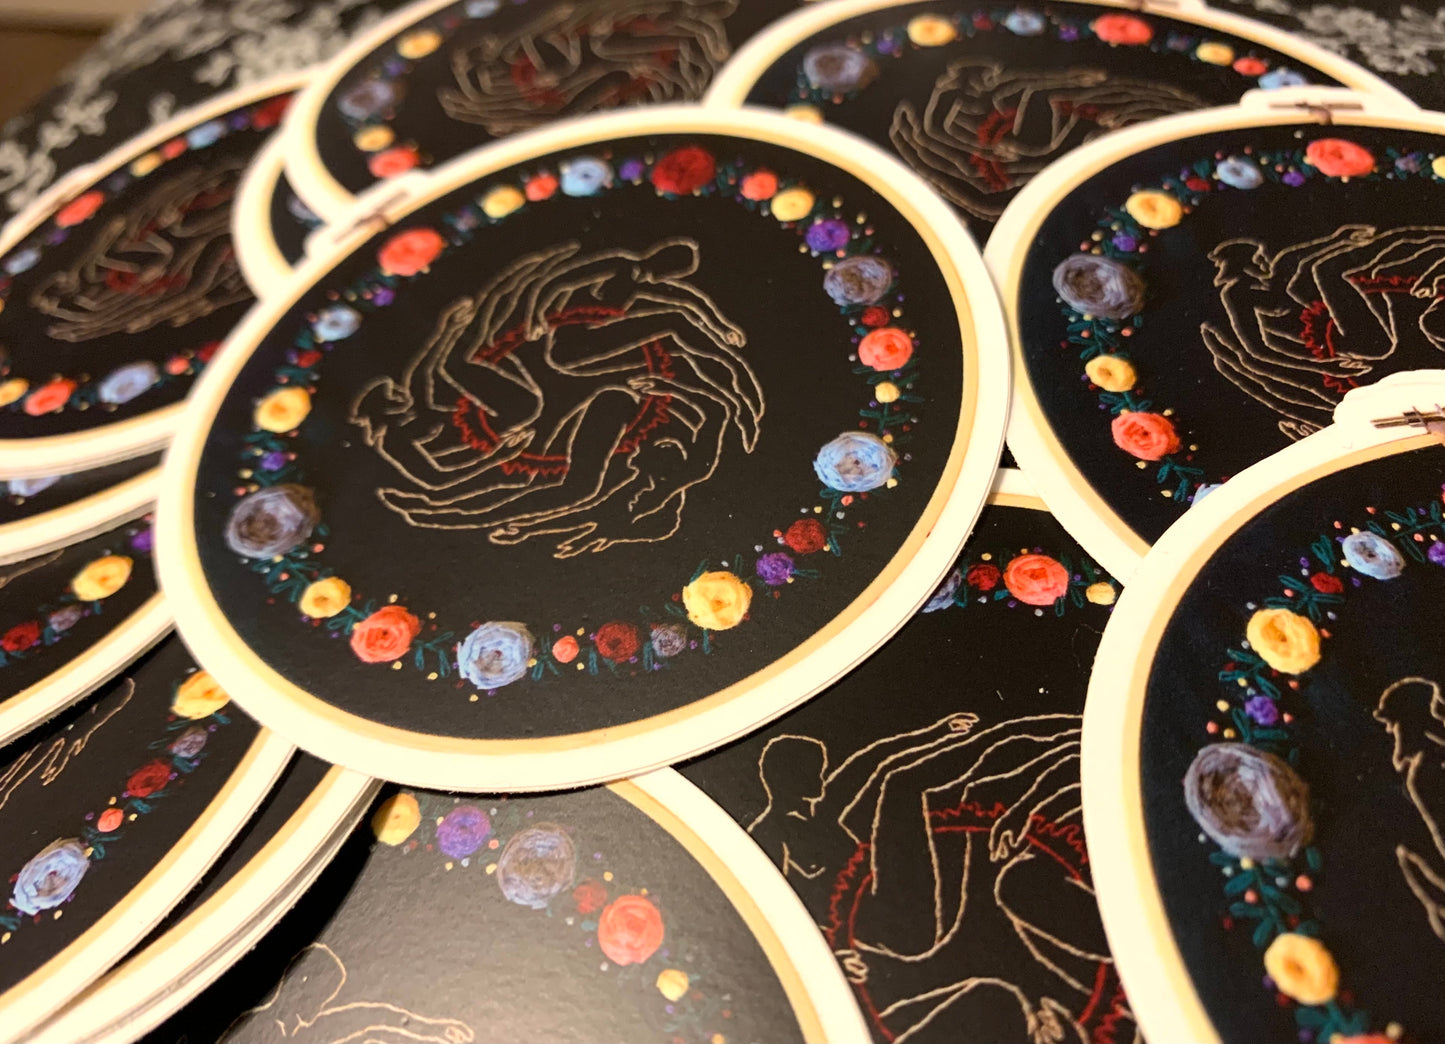 AFI Stickers - A Fire Inside - Fan Art - Embroidery Sticker Design!